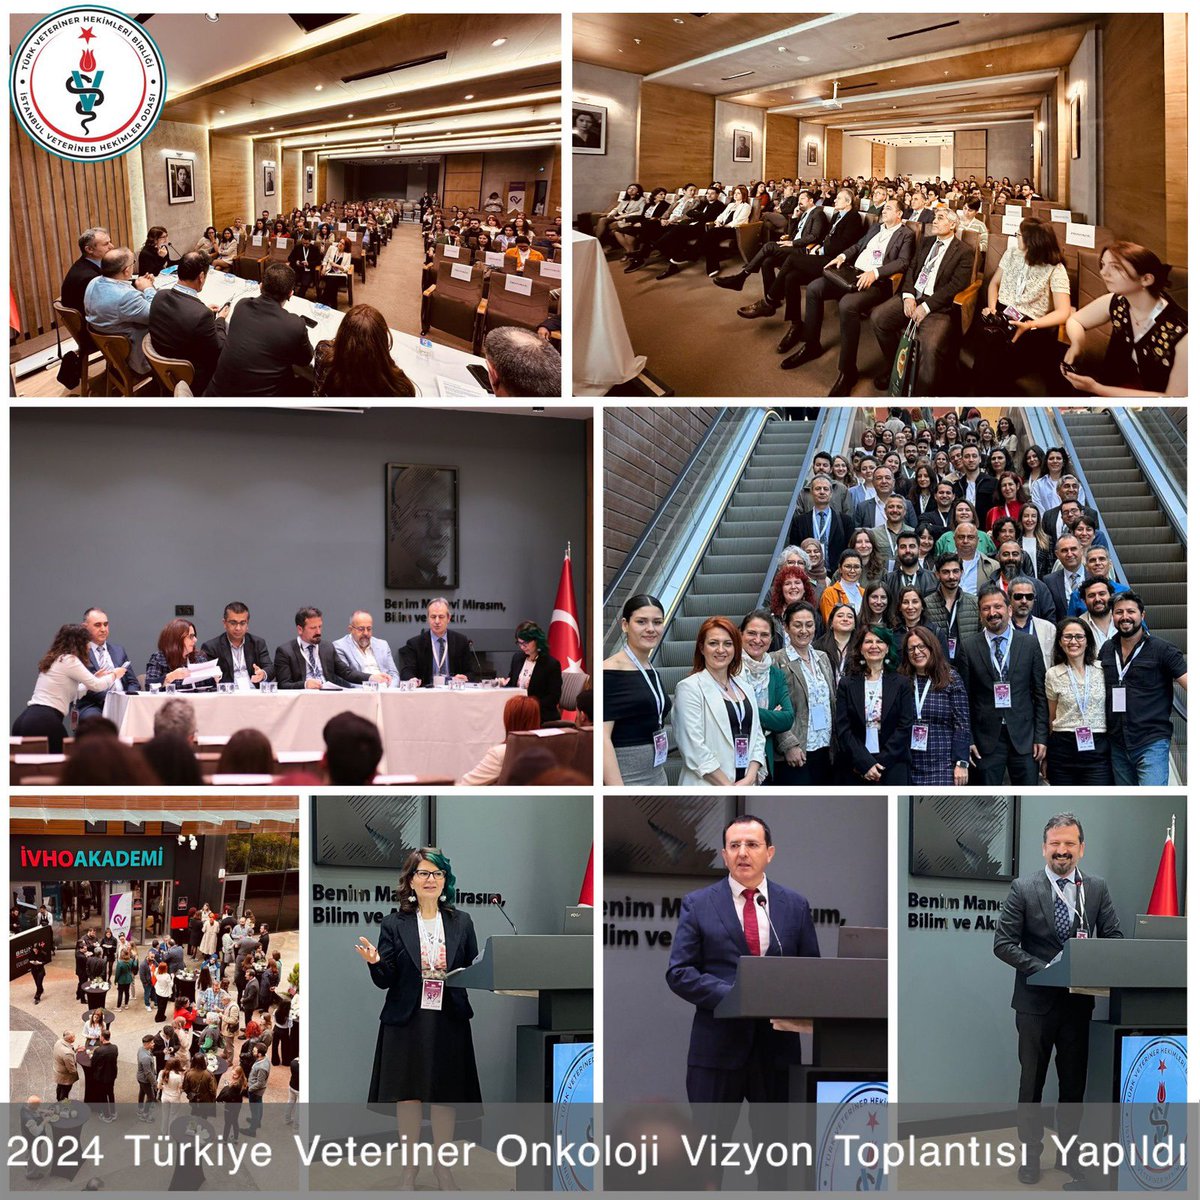 2024 Türkiye Veteriner Onkoloji Vizyon Toplantısı Yapıldı Açıklamamız; ivho.org.tr/pages/haberler…